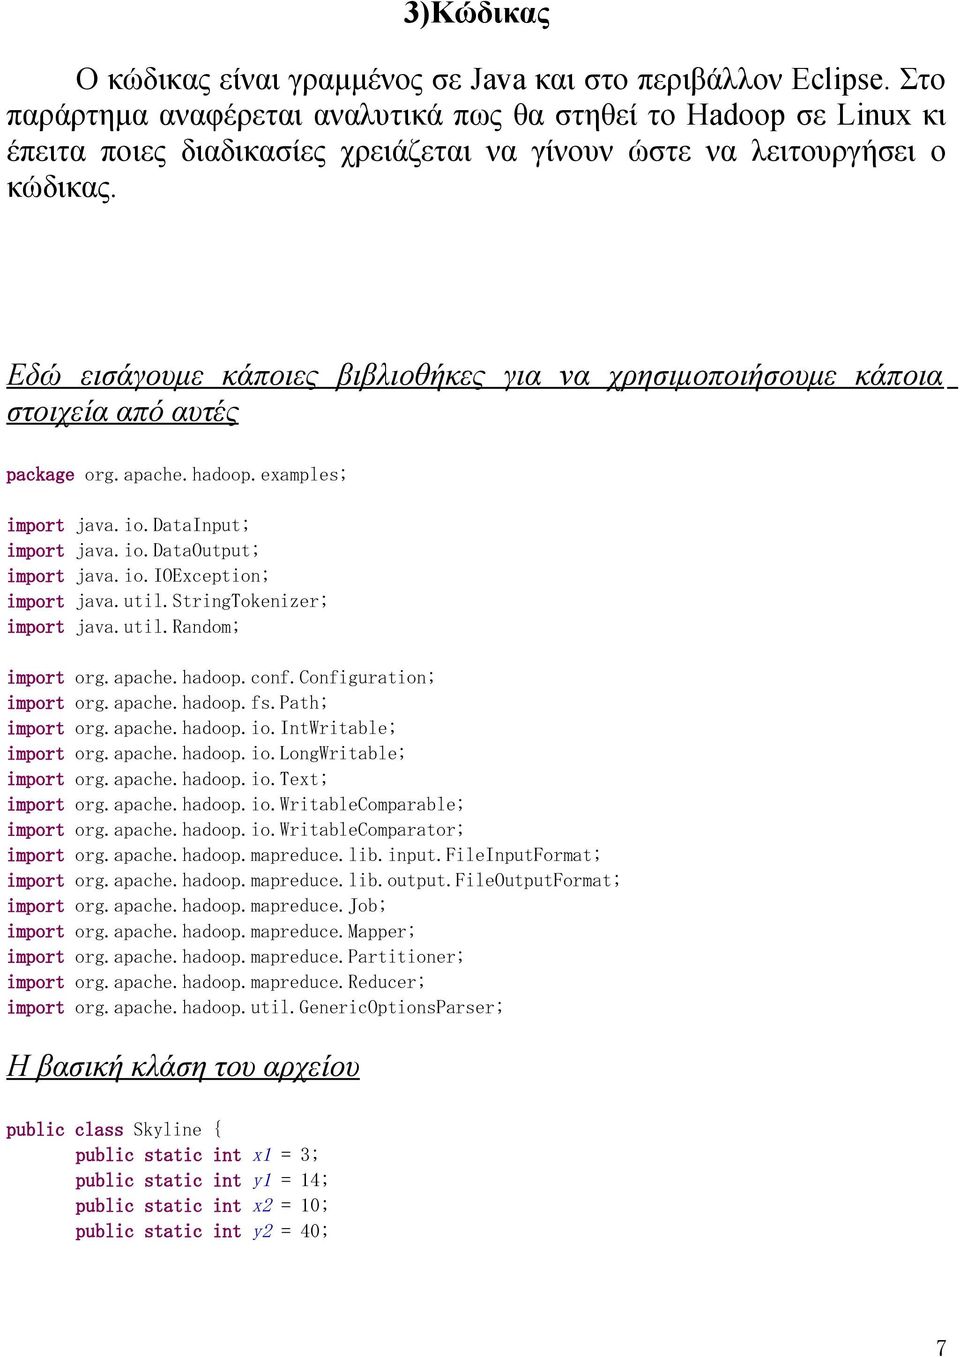 Εδώ εισάγουμε κάποιες βιβλιοθήκες για να χρησιμοποιήσουμε κάποια στοιχεία από αυτές package org.apache.hadoop.examples; java.io.datainput; java.io.dataoutput; java.io.ioexception; java.util.